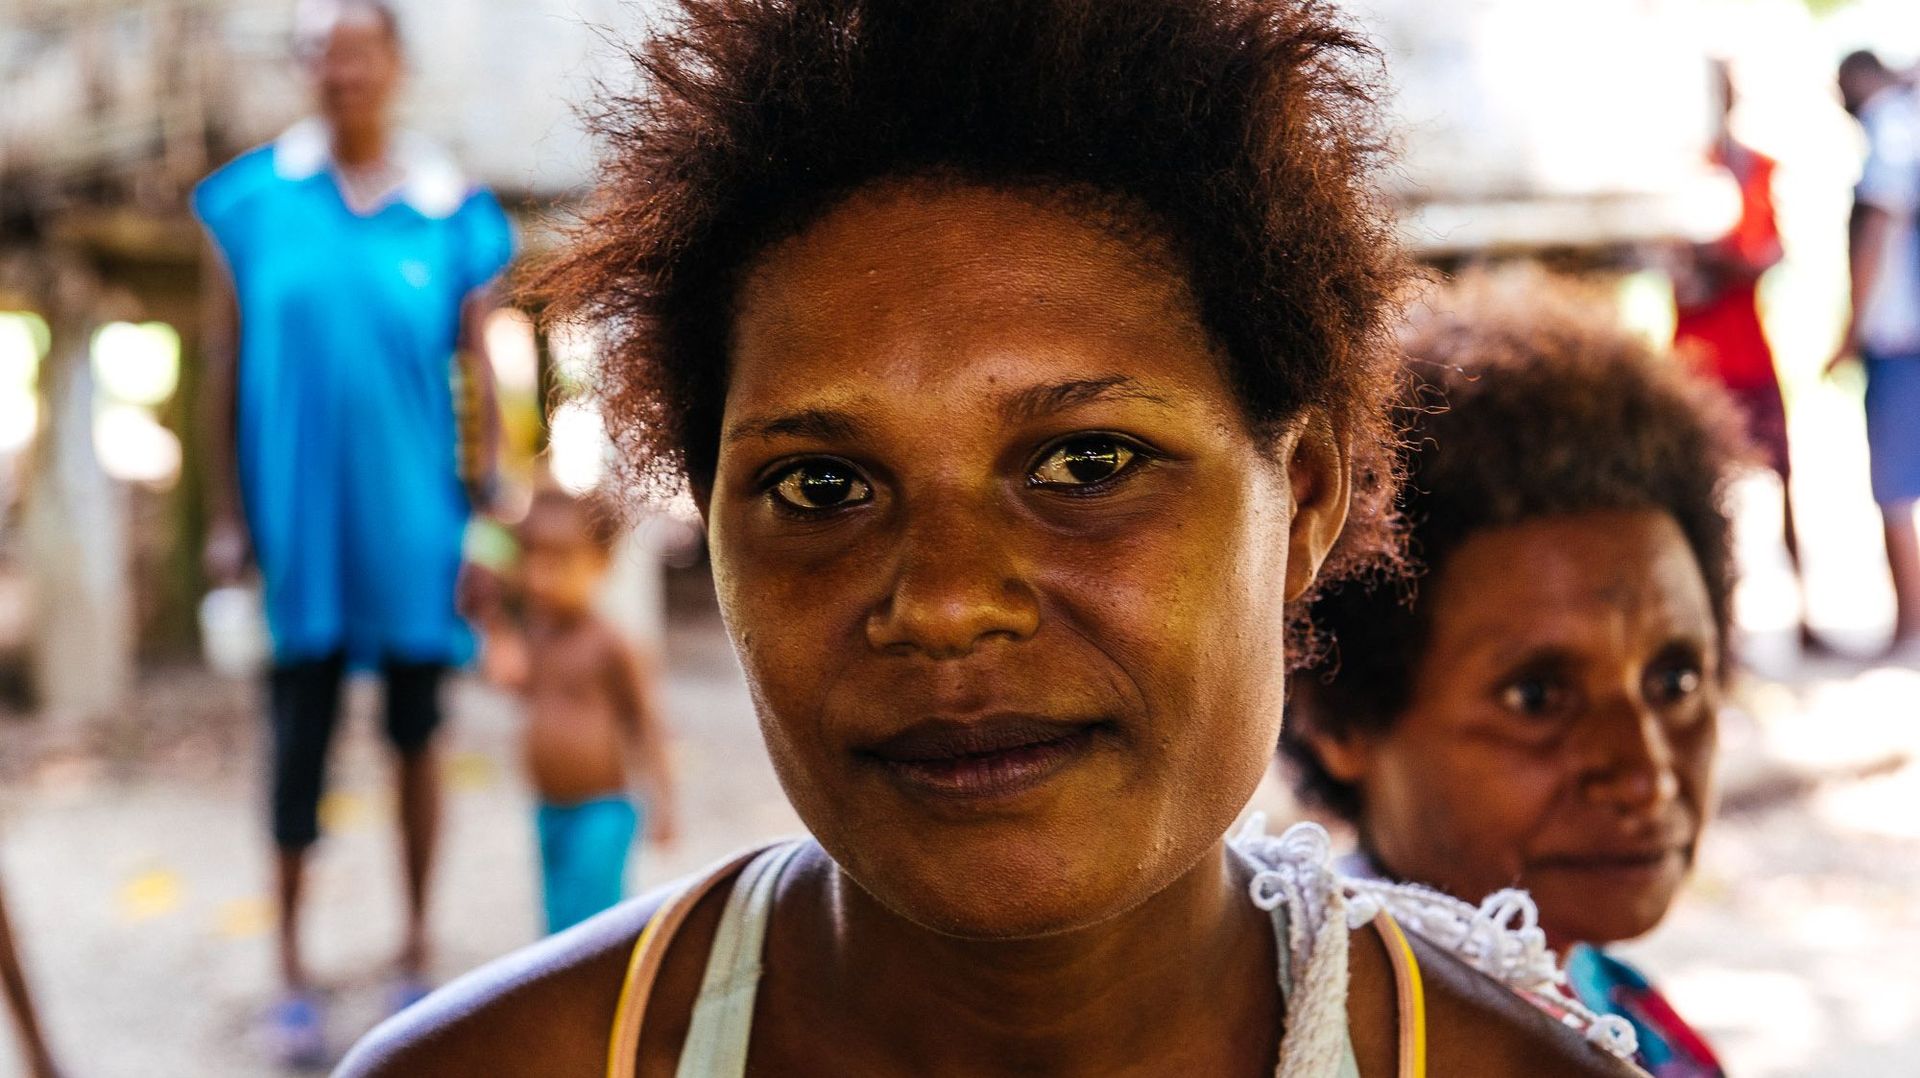 Violences familiales, agressions sexuelles, harcèlement psychologique... En Papouasie-Nouvelle-Guinée, les femmes se battent pour faire respecter leurs droits.